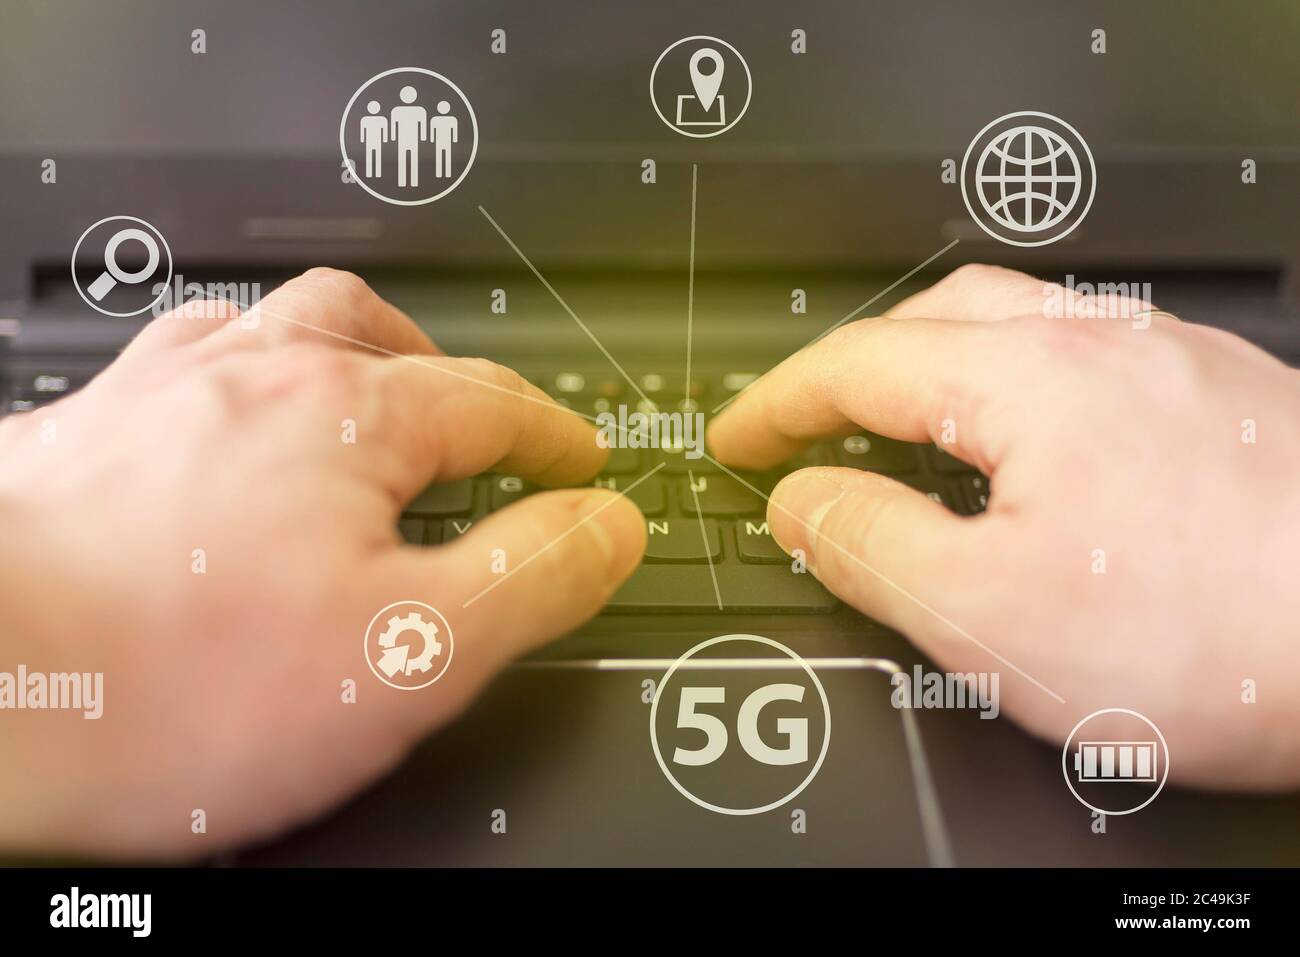 La technologie d'entreprise de télécommunications 5G est un concept de réseau basé sur le Web. Technologie Internet LTE. Mains sur le clavier de l'ordinateur portable. Banque D'Images